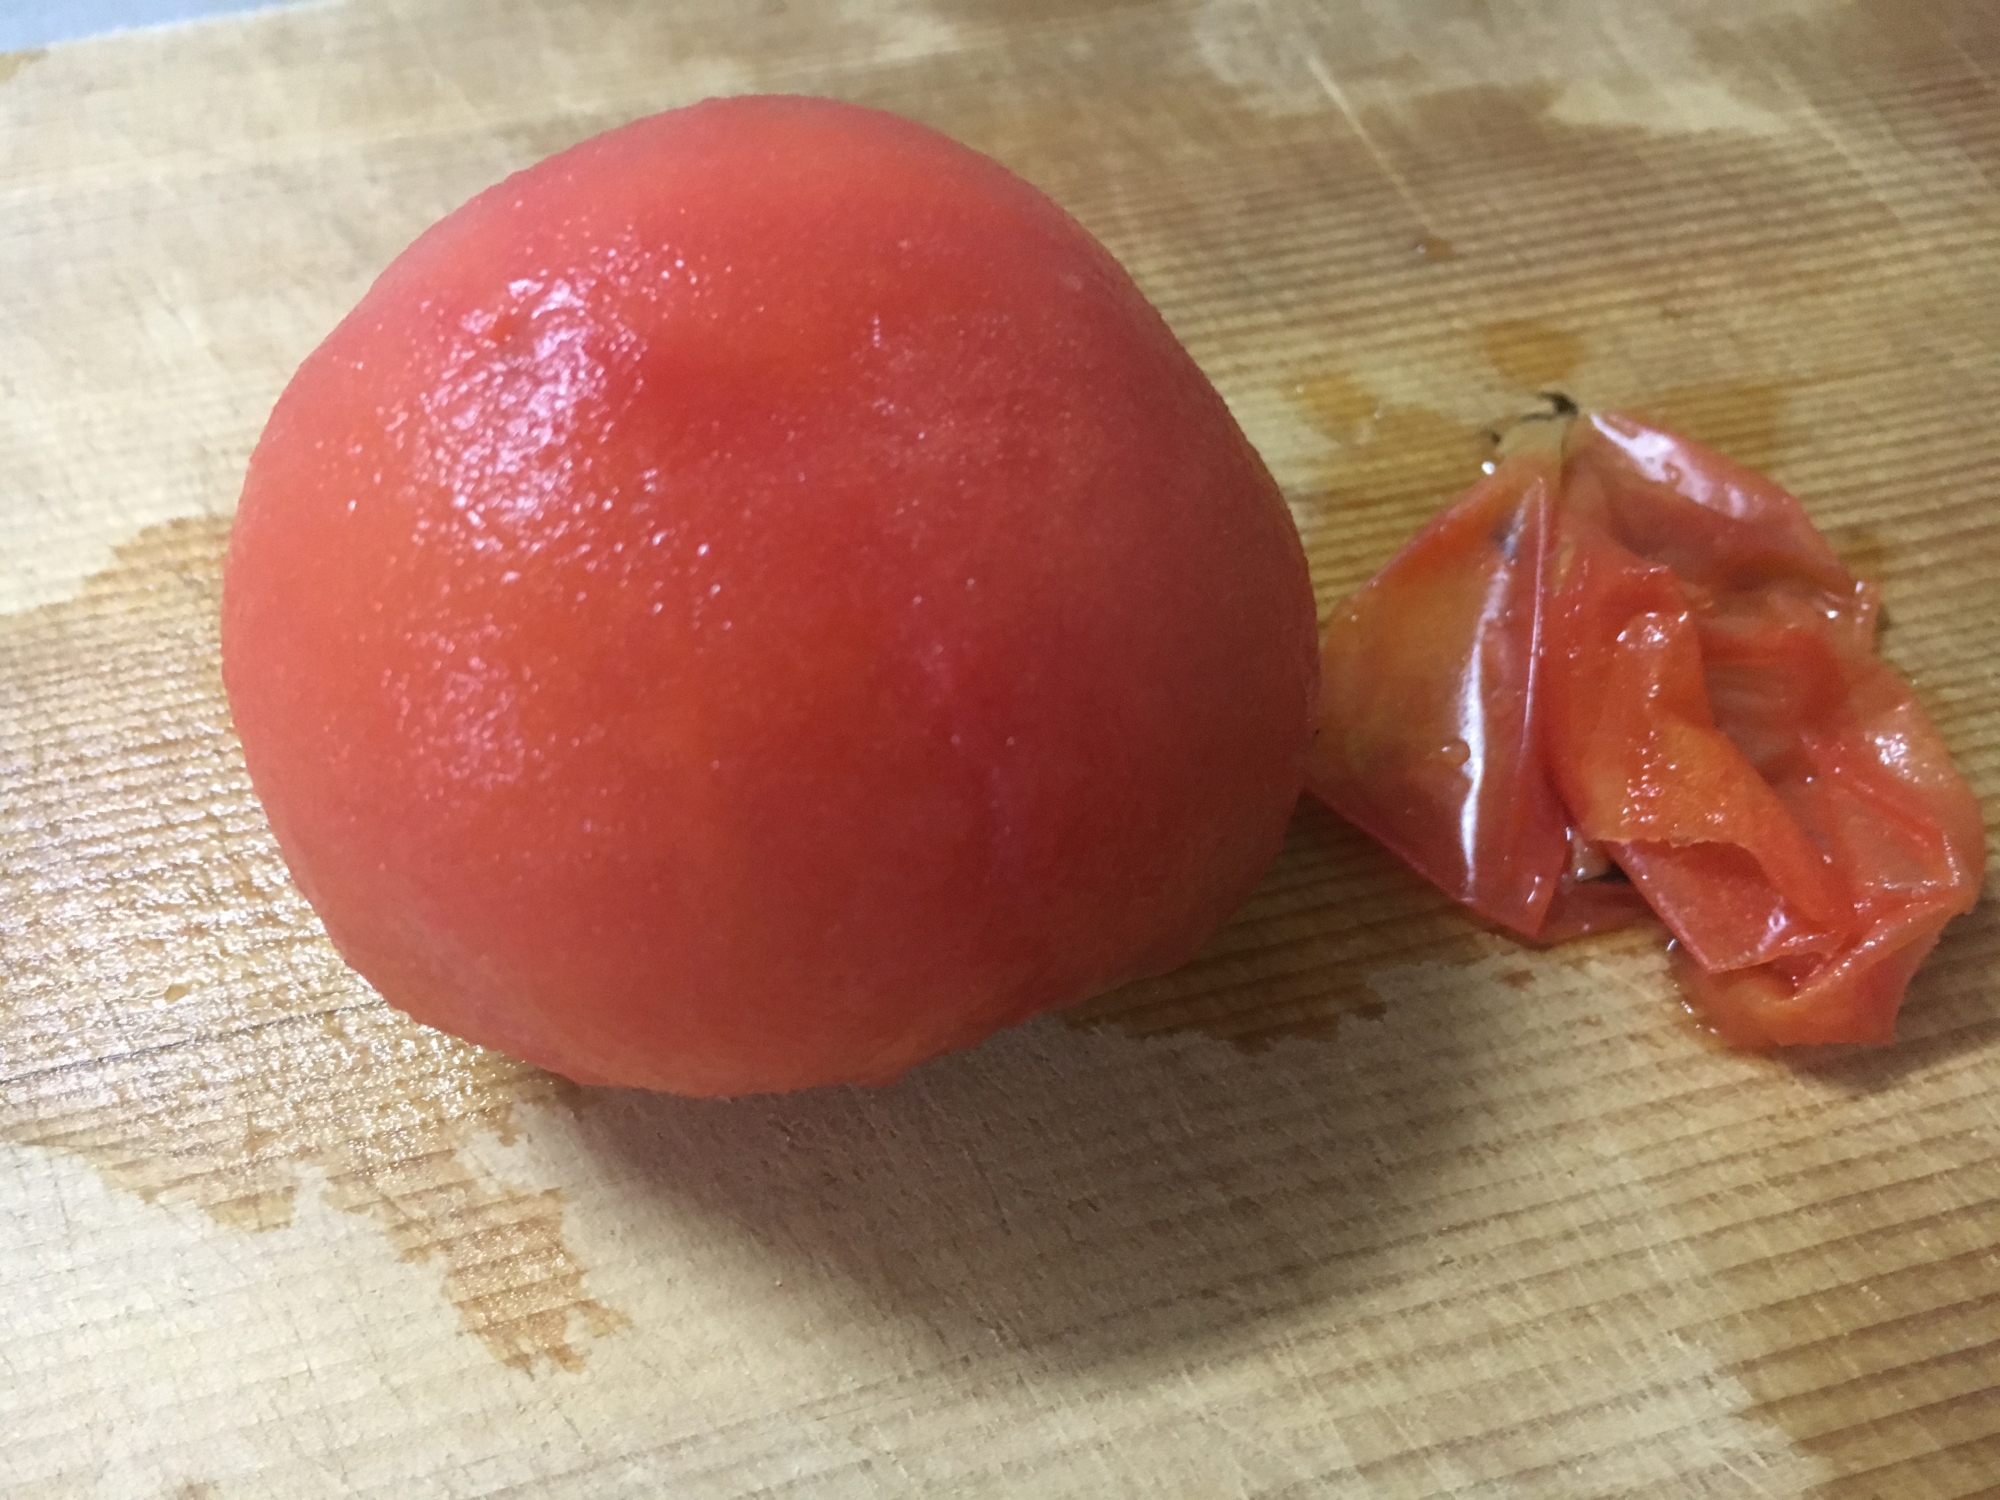 冷凍トマト